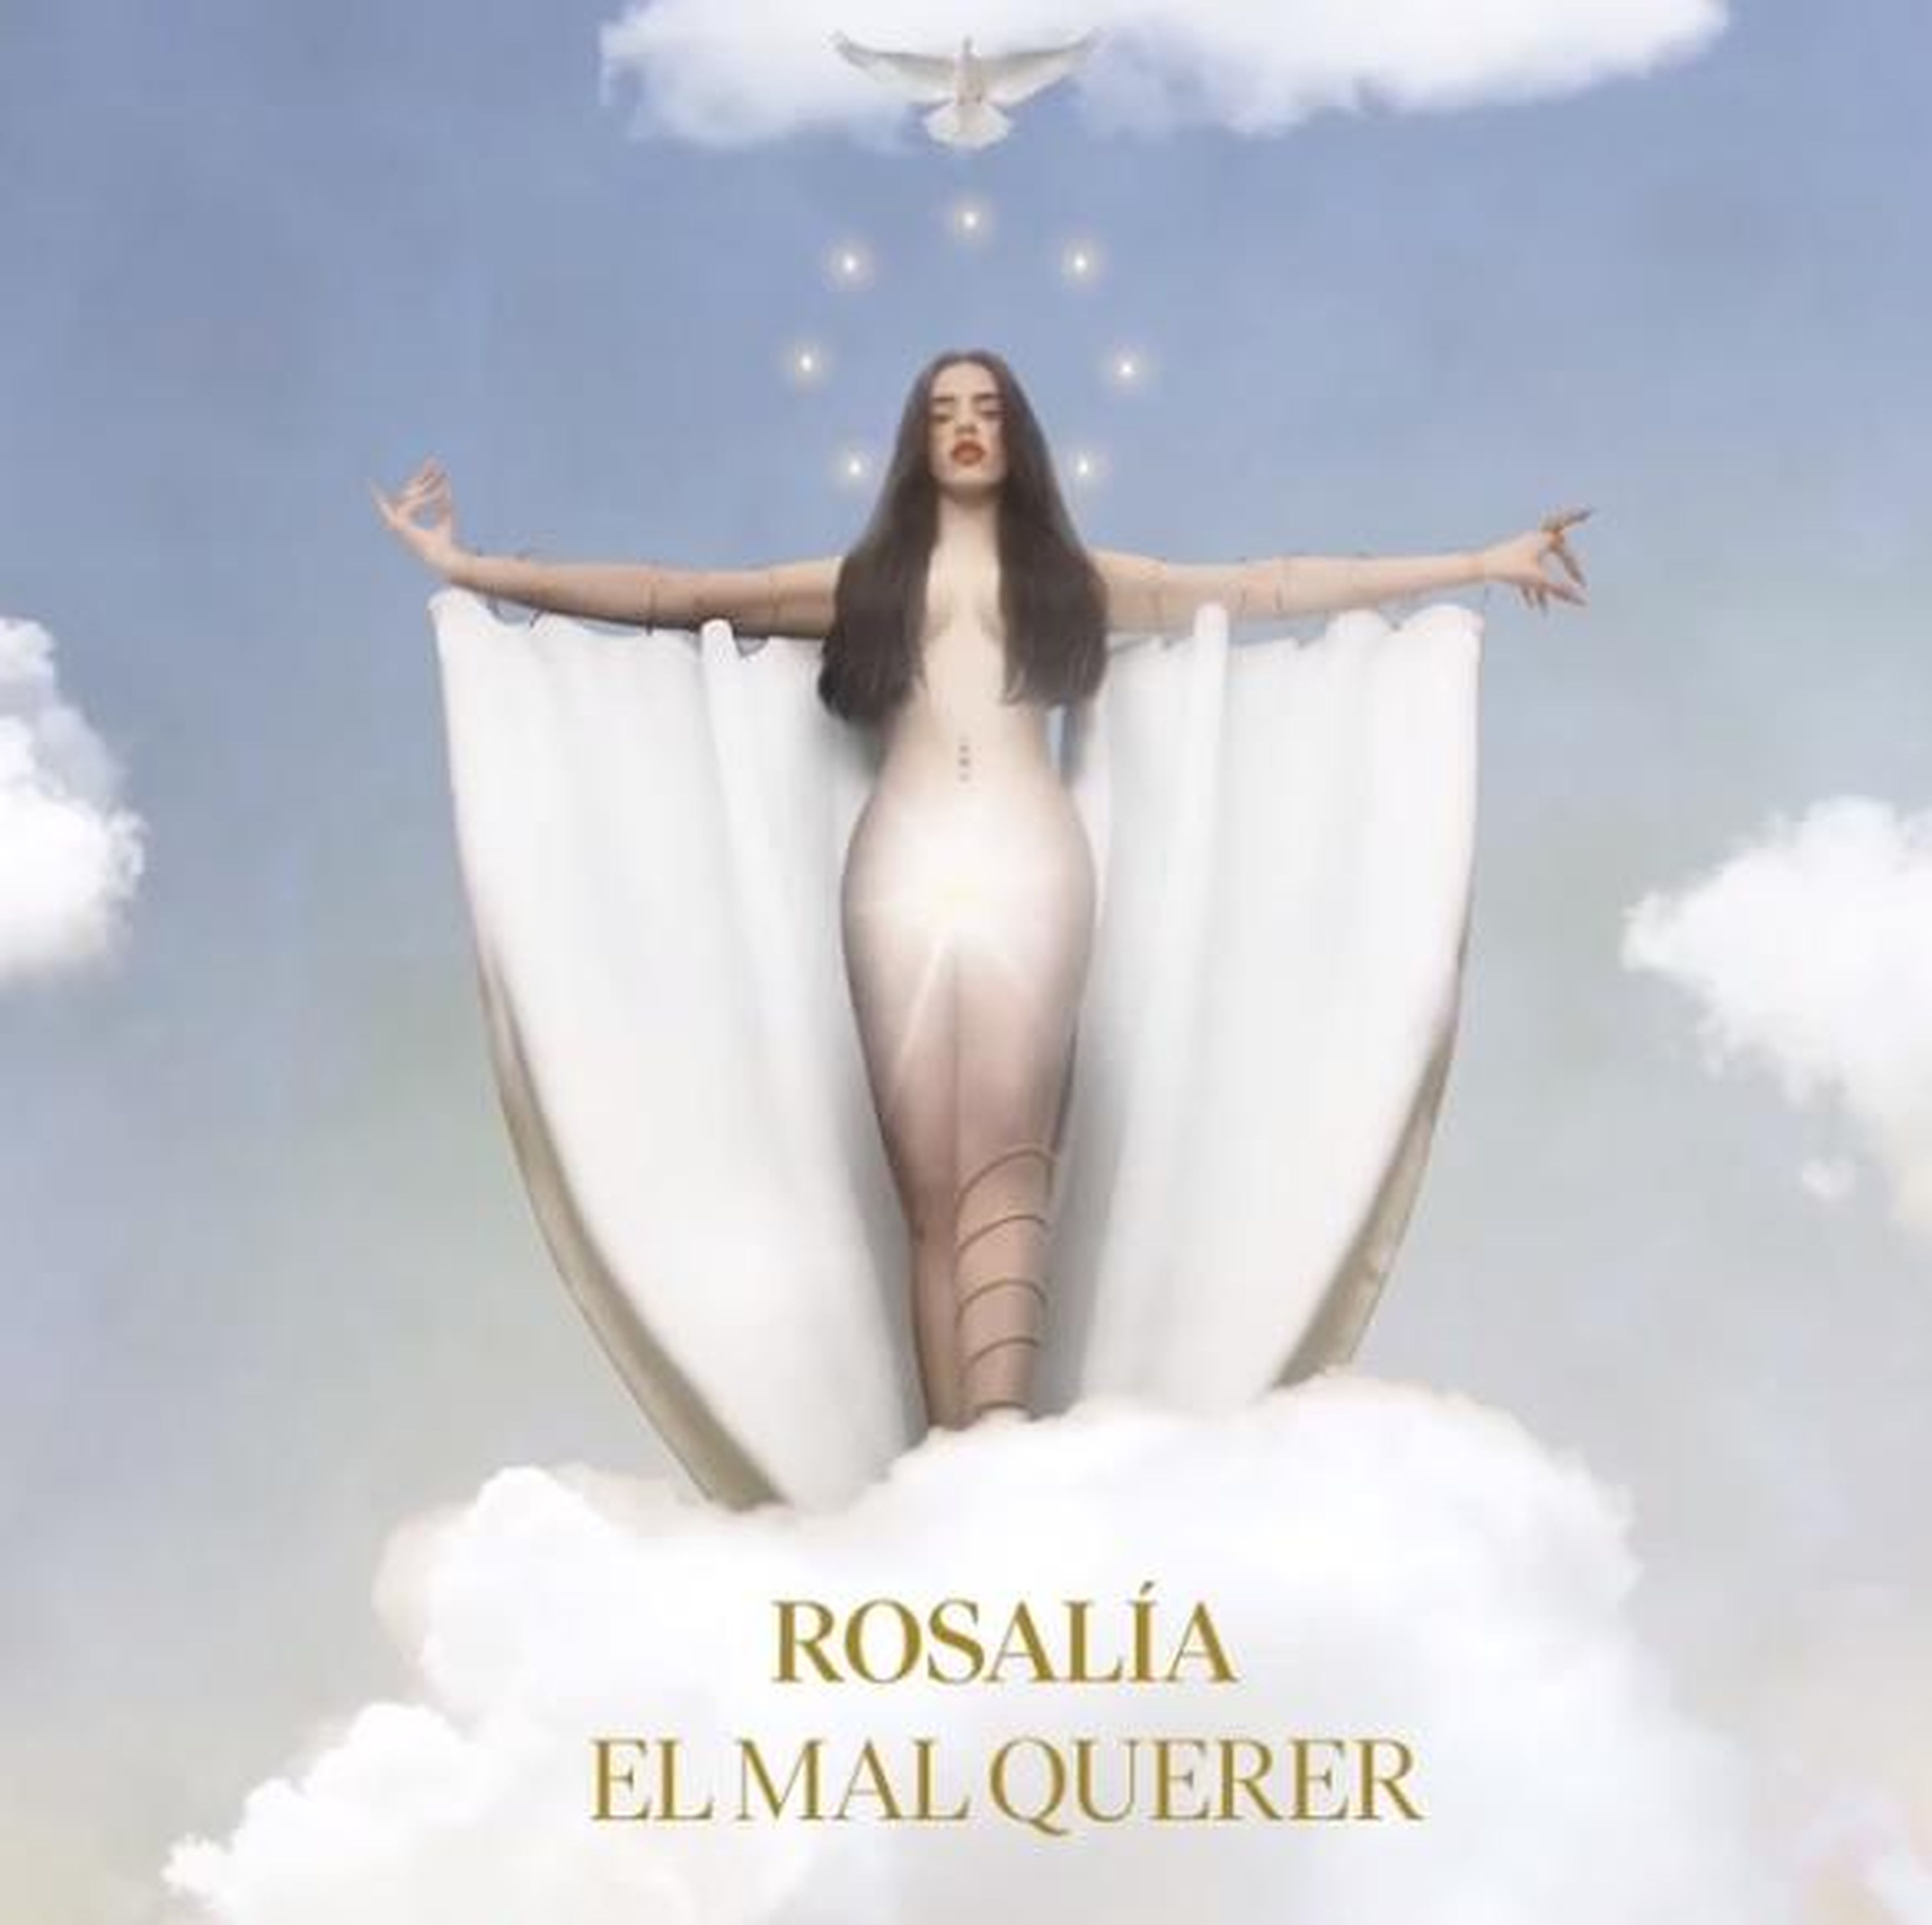 El mal querer, segundo disco de Rosalía Vila.